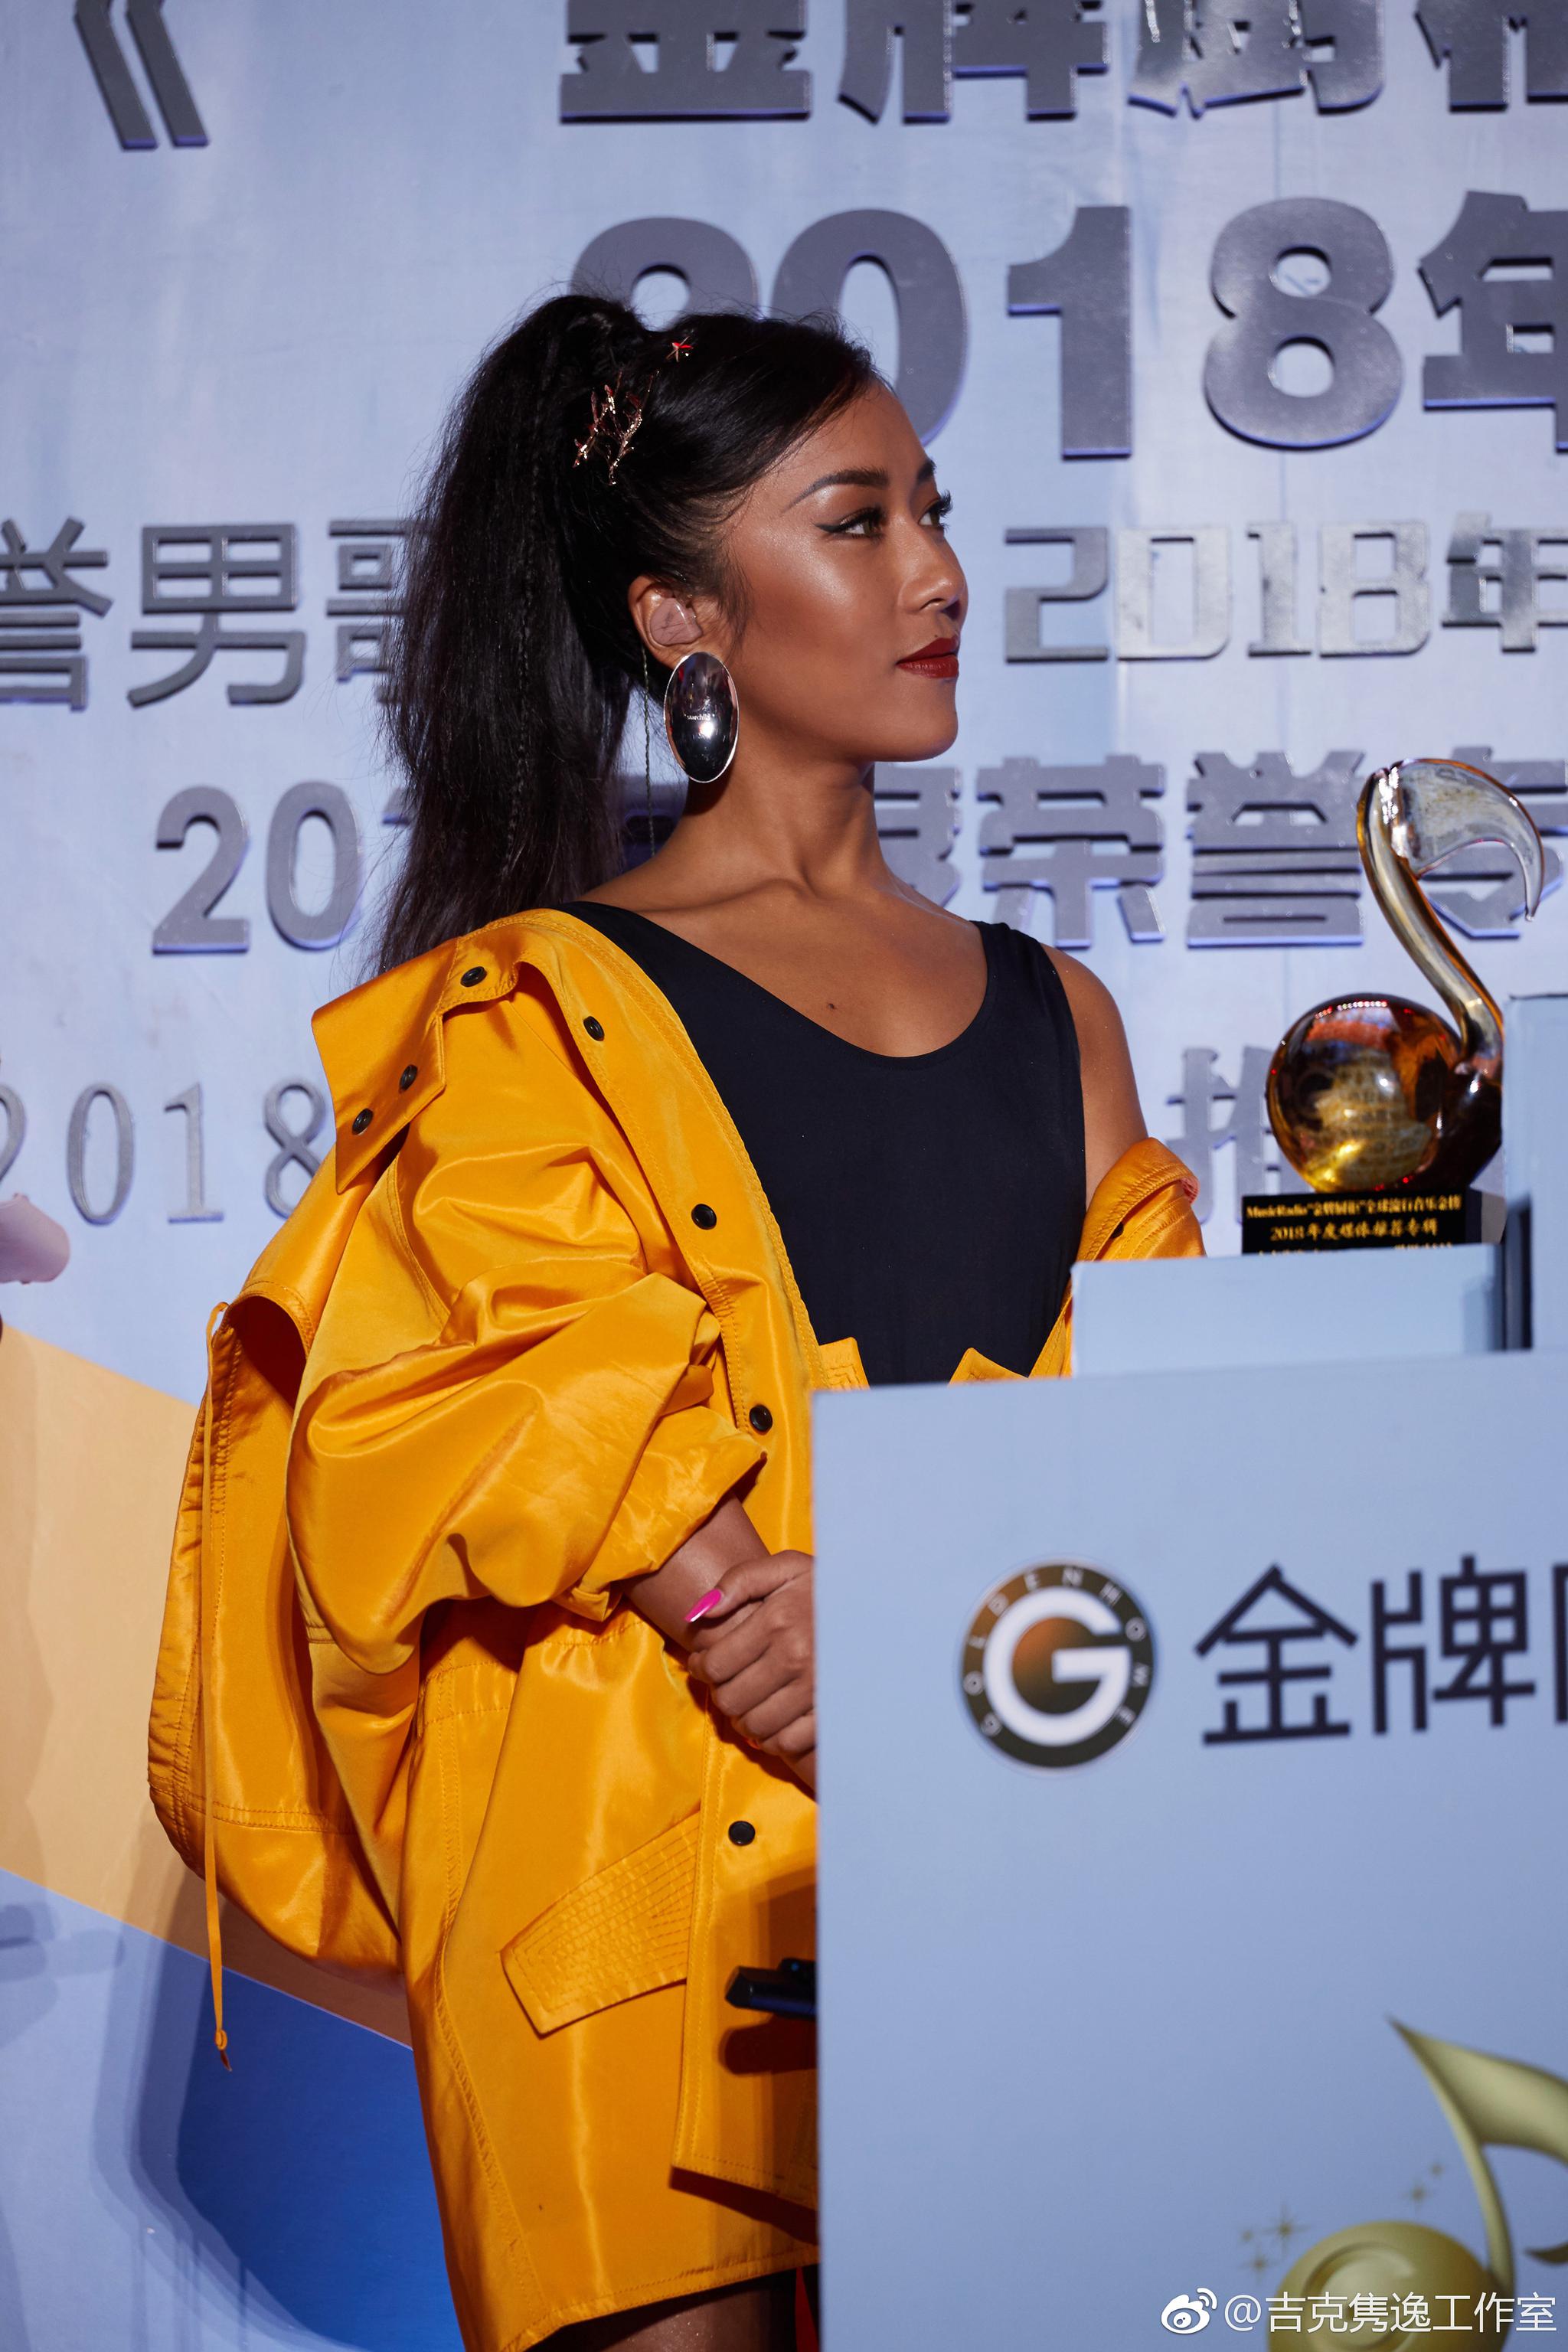 恭喜优秀的summermomoko@吉克隽逸 在 颁奖盛典中荣获“2018年度媒体